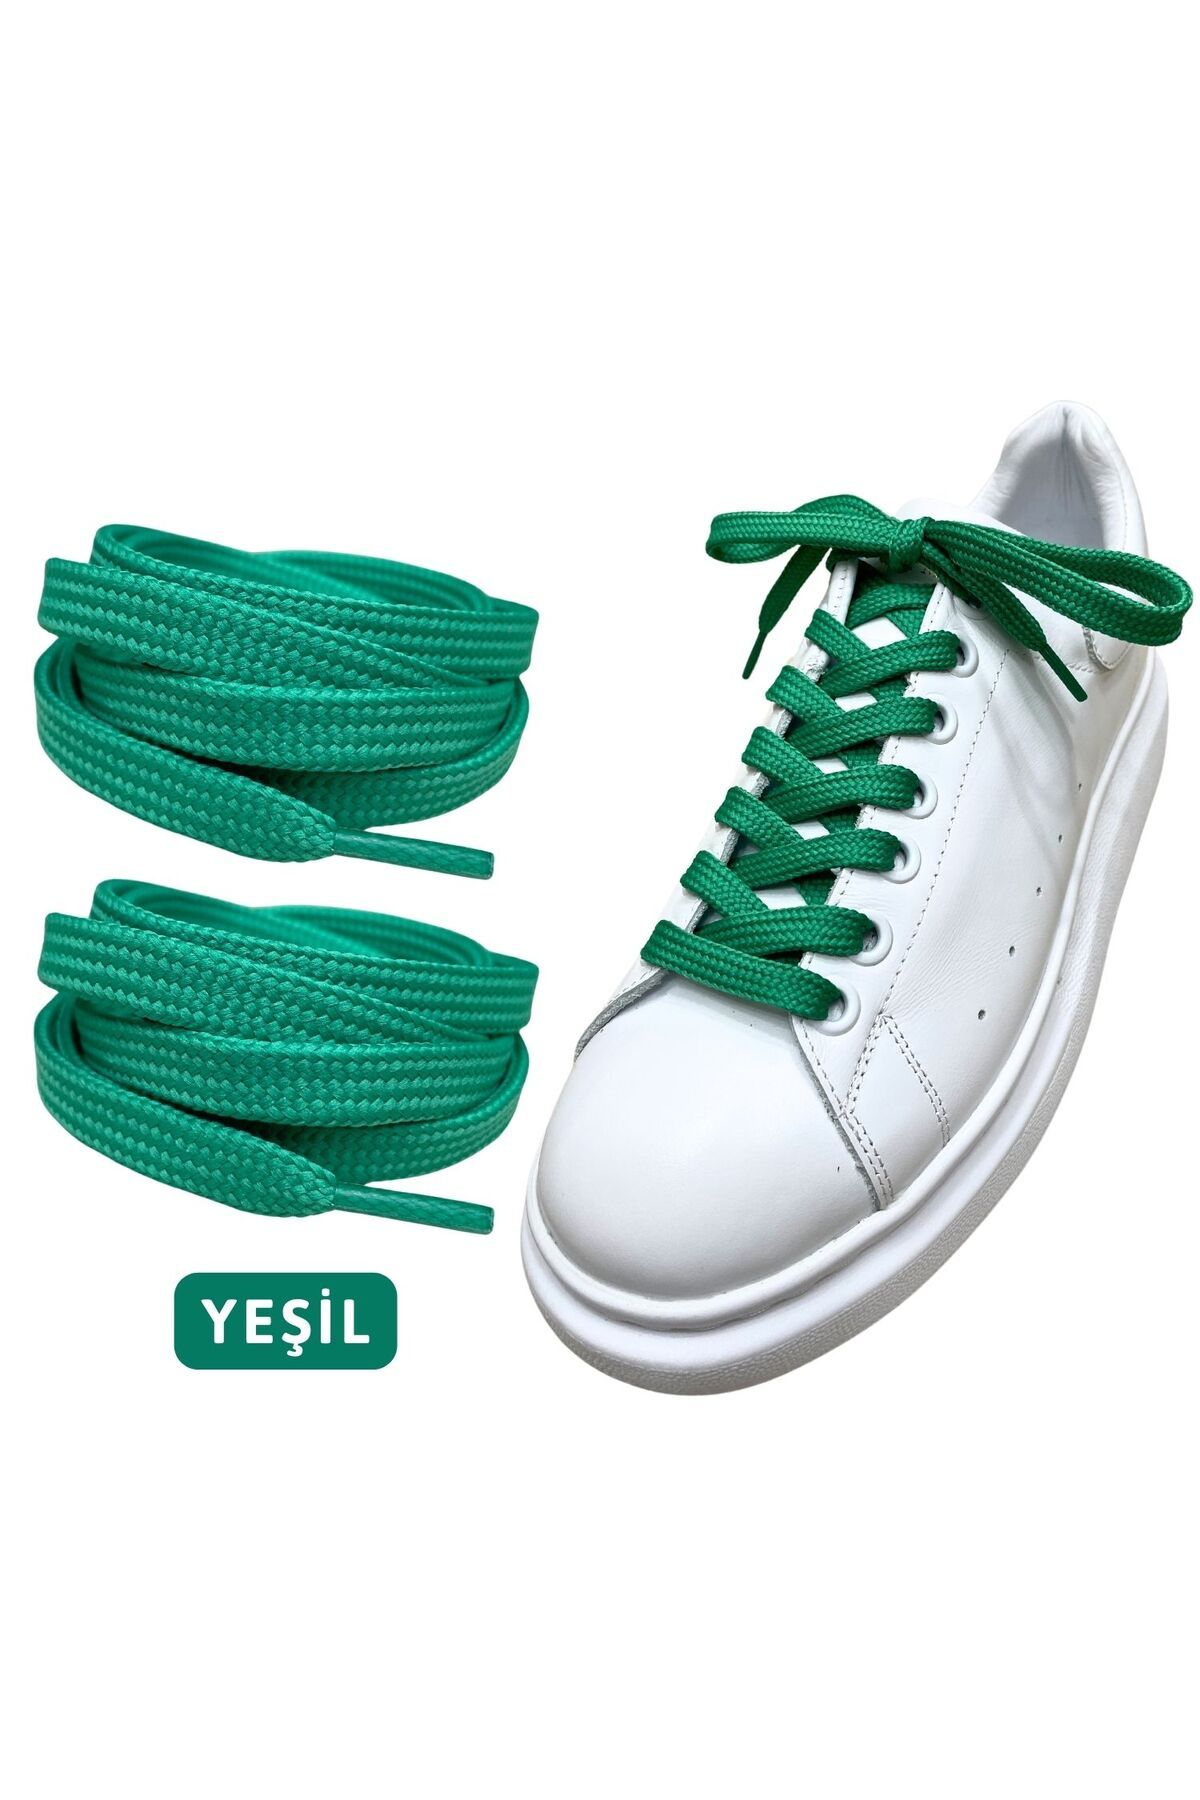 ipekbazaar Exclusice 120 Cm Yeşil Yassı Spor Ayakkabı Bağcığı, Çift Katmanlı Örgülü Sneakers Bağcık, 1 Çift